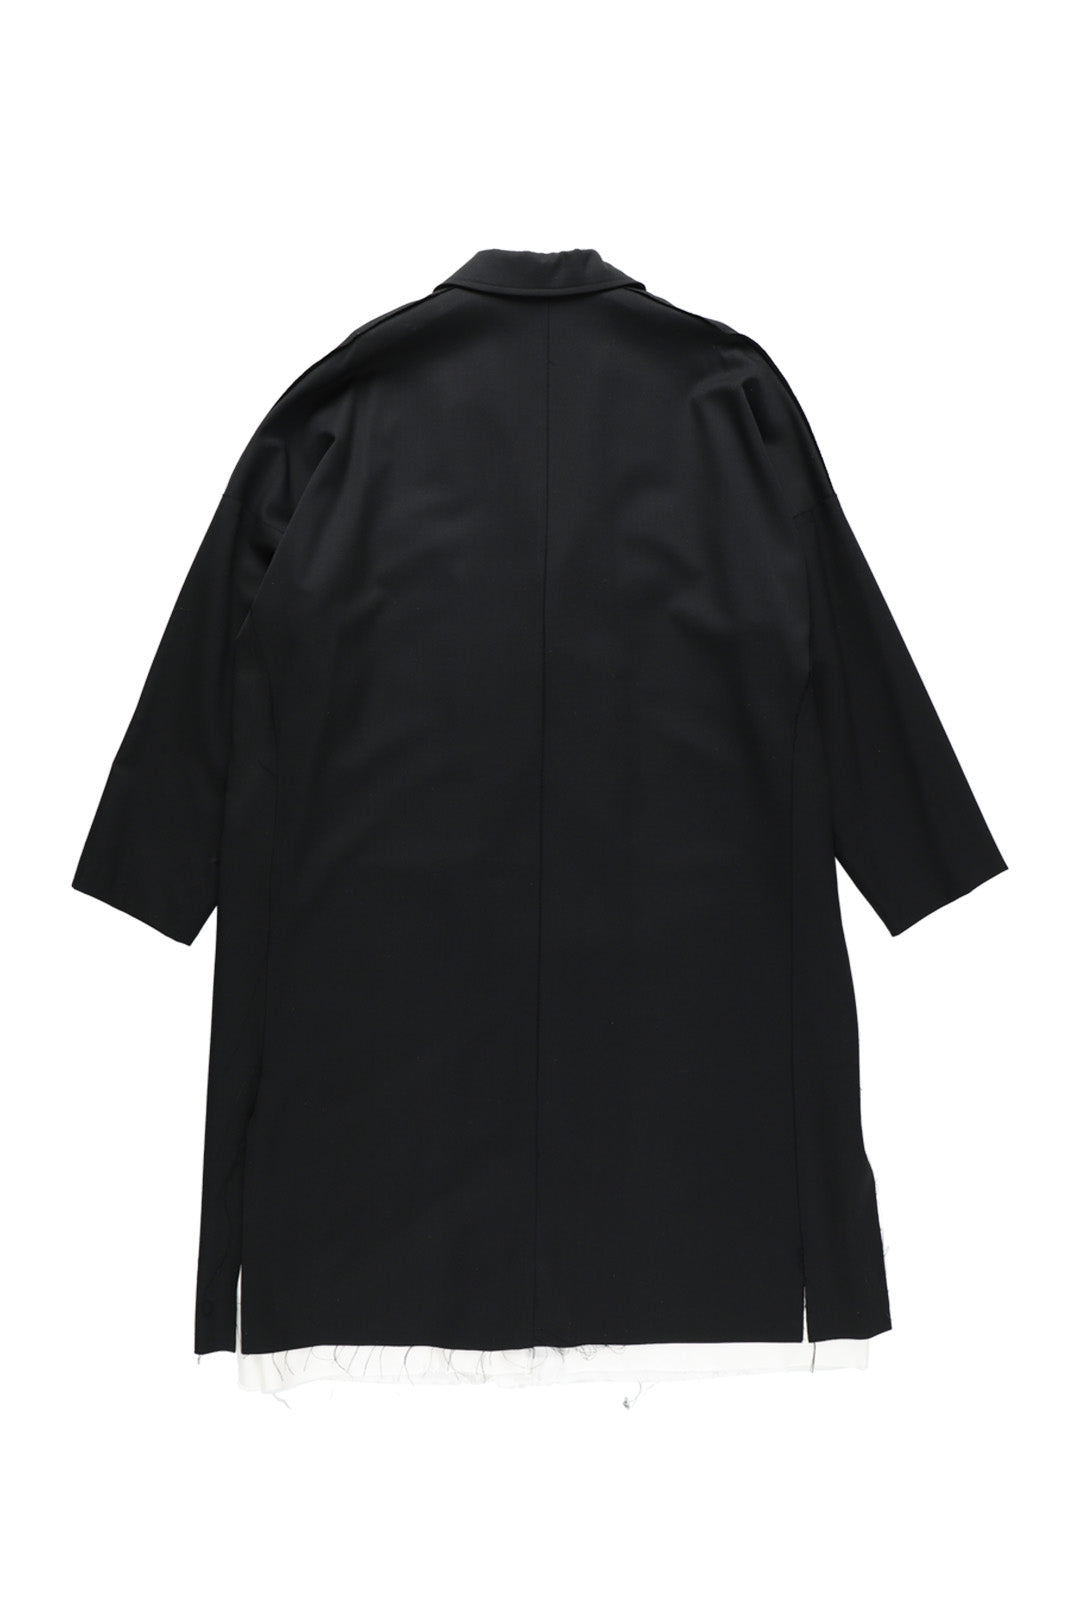 sulvam Classic over coat black AW22 | sulvam online store